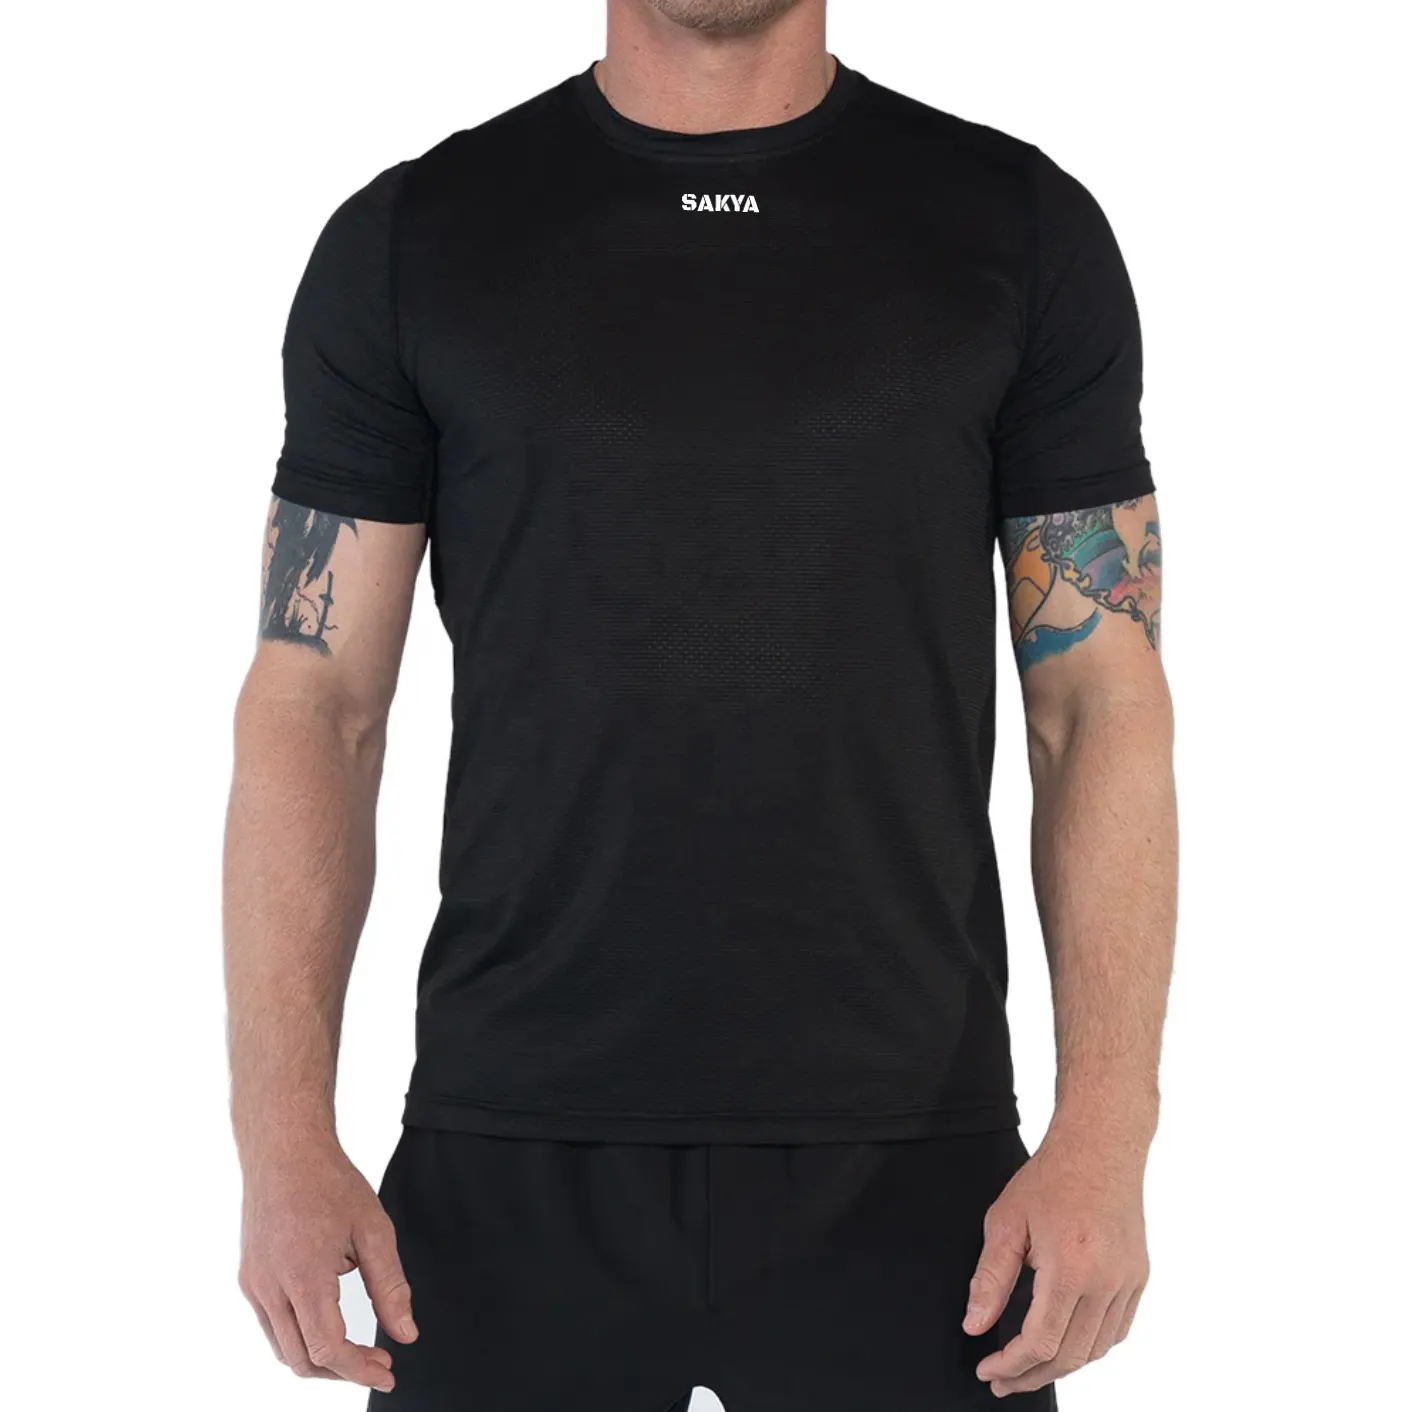 최신 새로운 유형의 피트니스 의류 남성 슬림 스포츠 티셔츠 통기성 남성 티셔츠